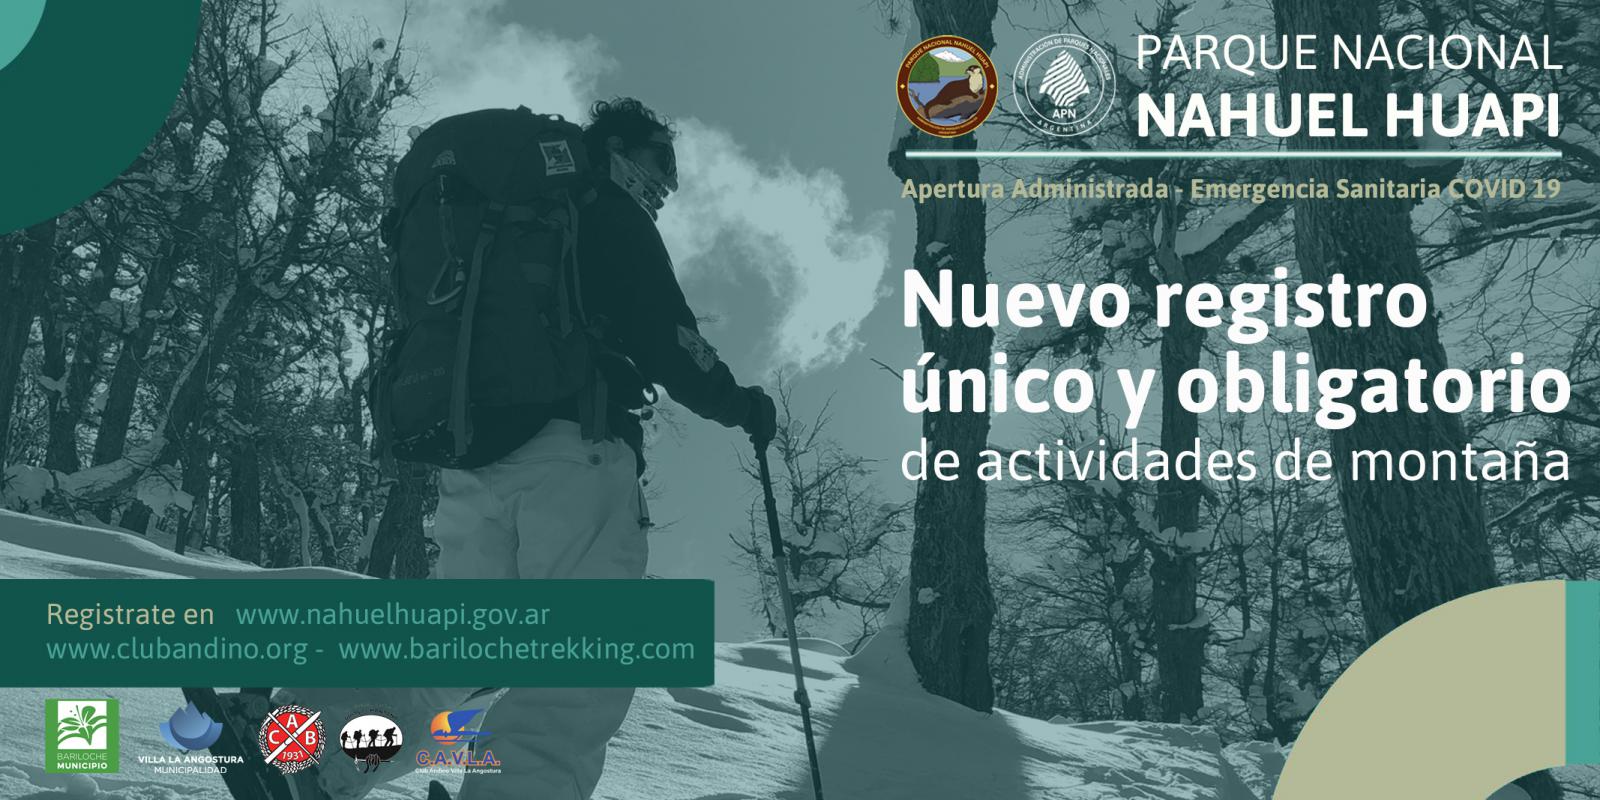  Nuevo registro &uacute;nico y obligatorio para todo tipo de actividades de monta&ntilde;a en el Parque Nacional Nahuel Huapi